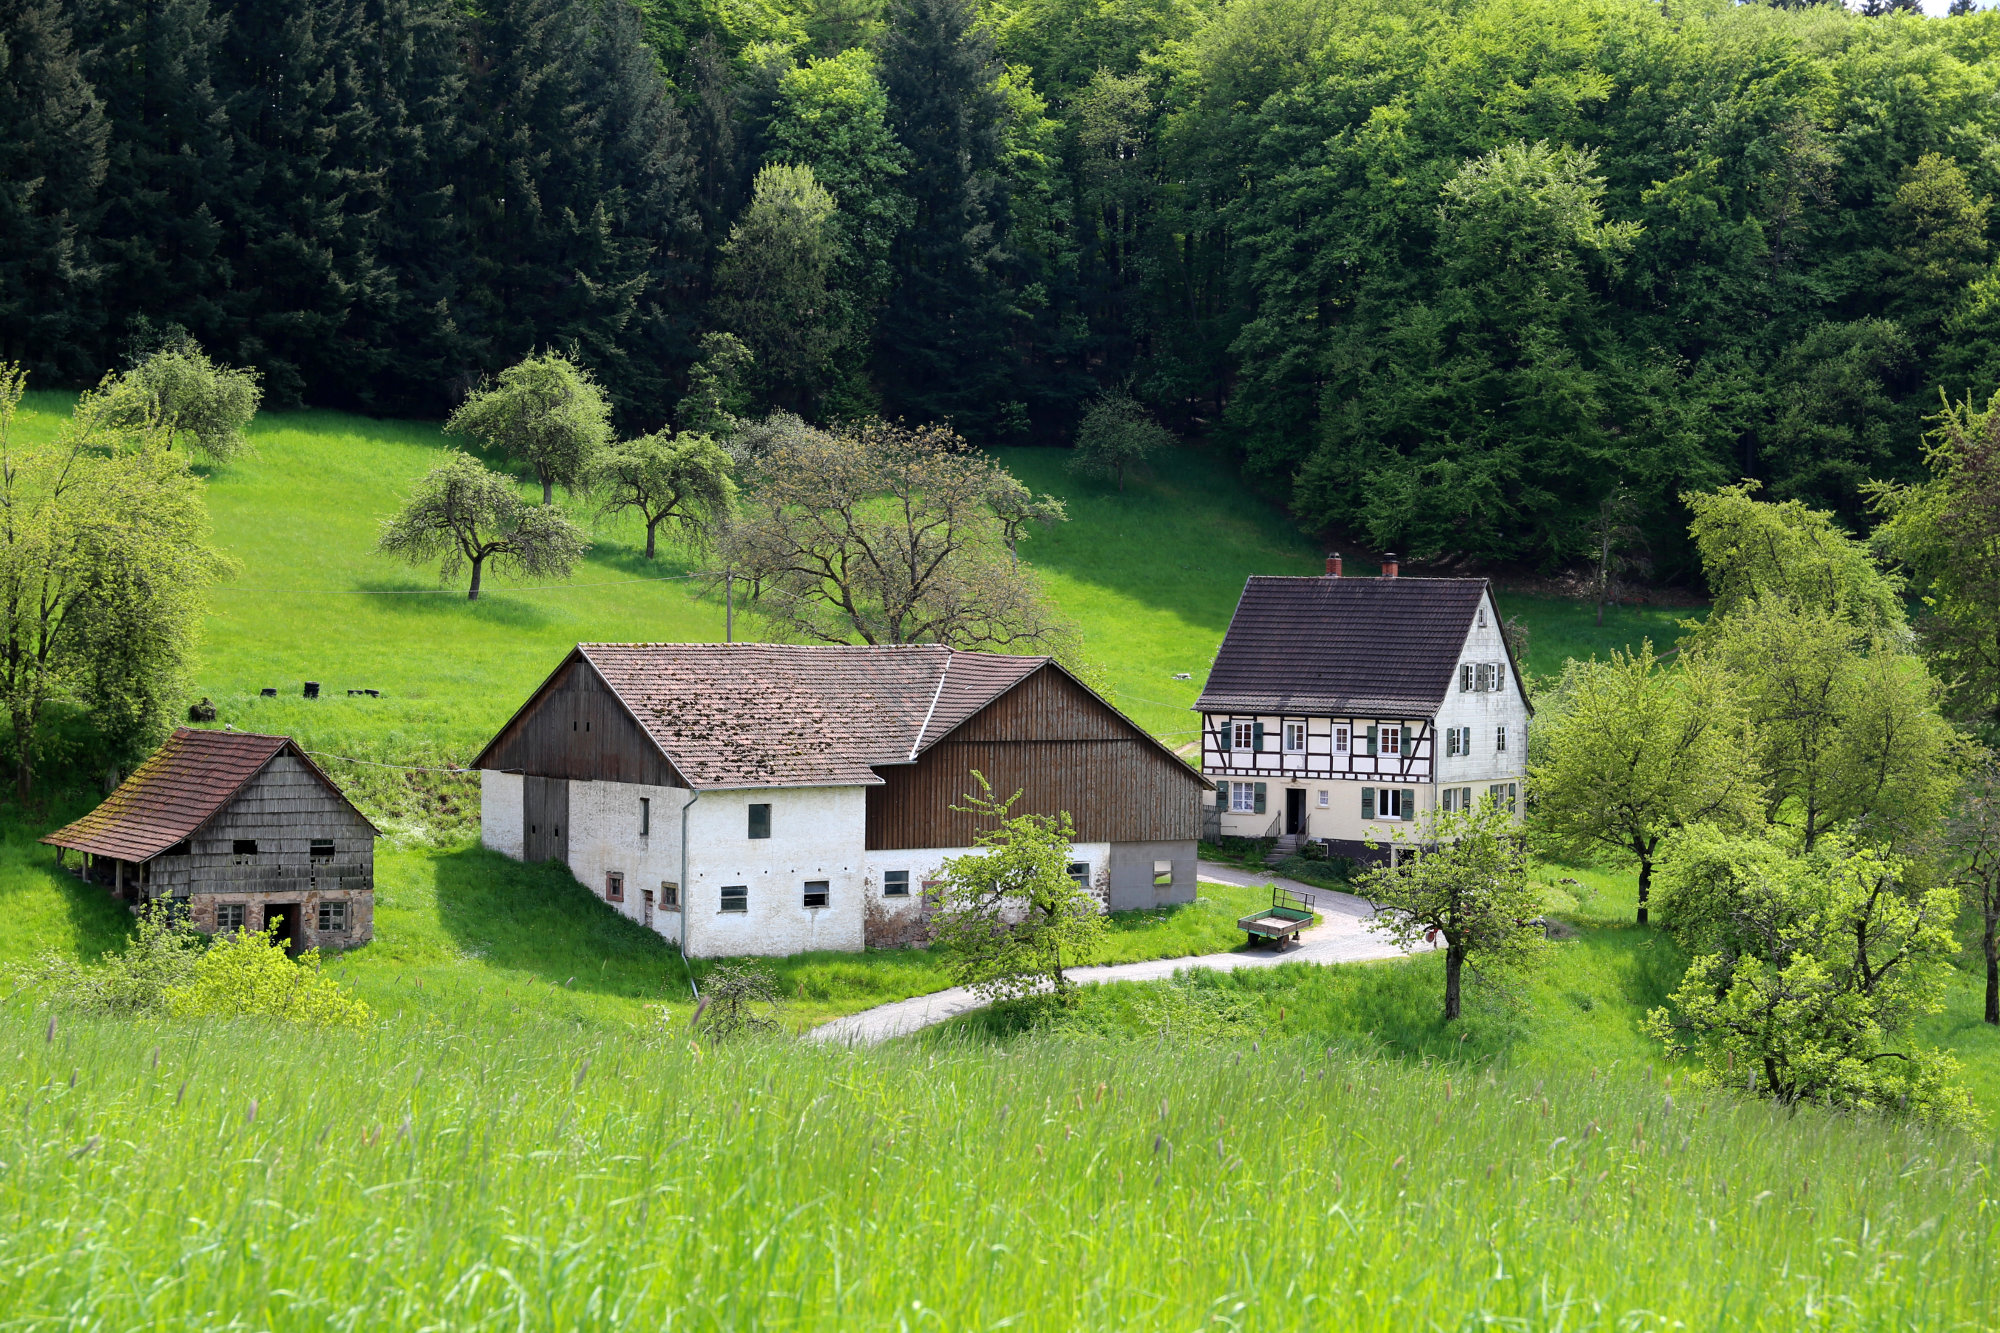 Fachwerkhaus und Nebengebäude in grüner, hügeliger Landschaft